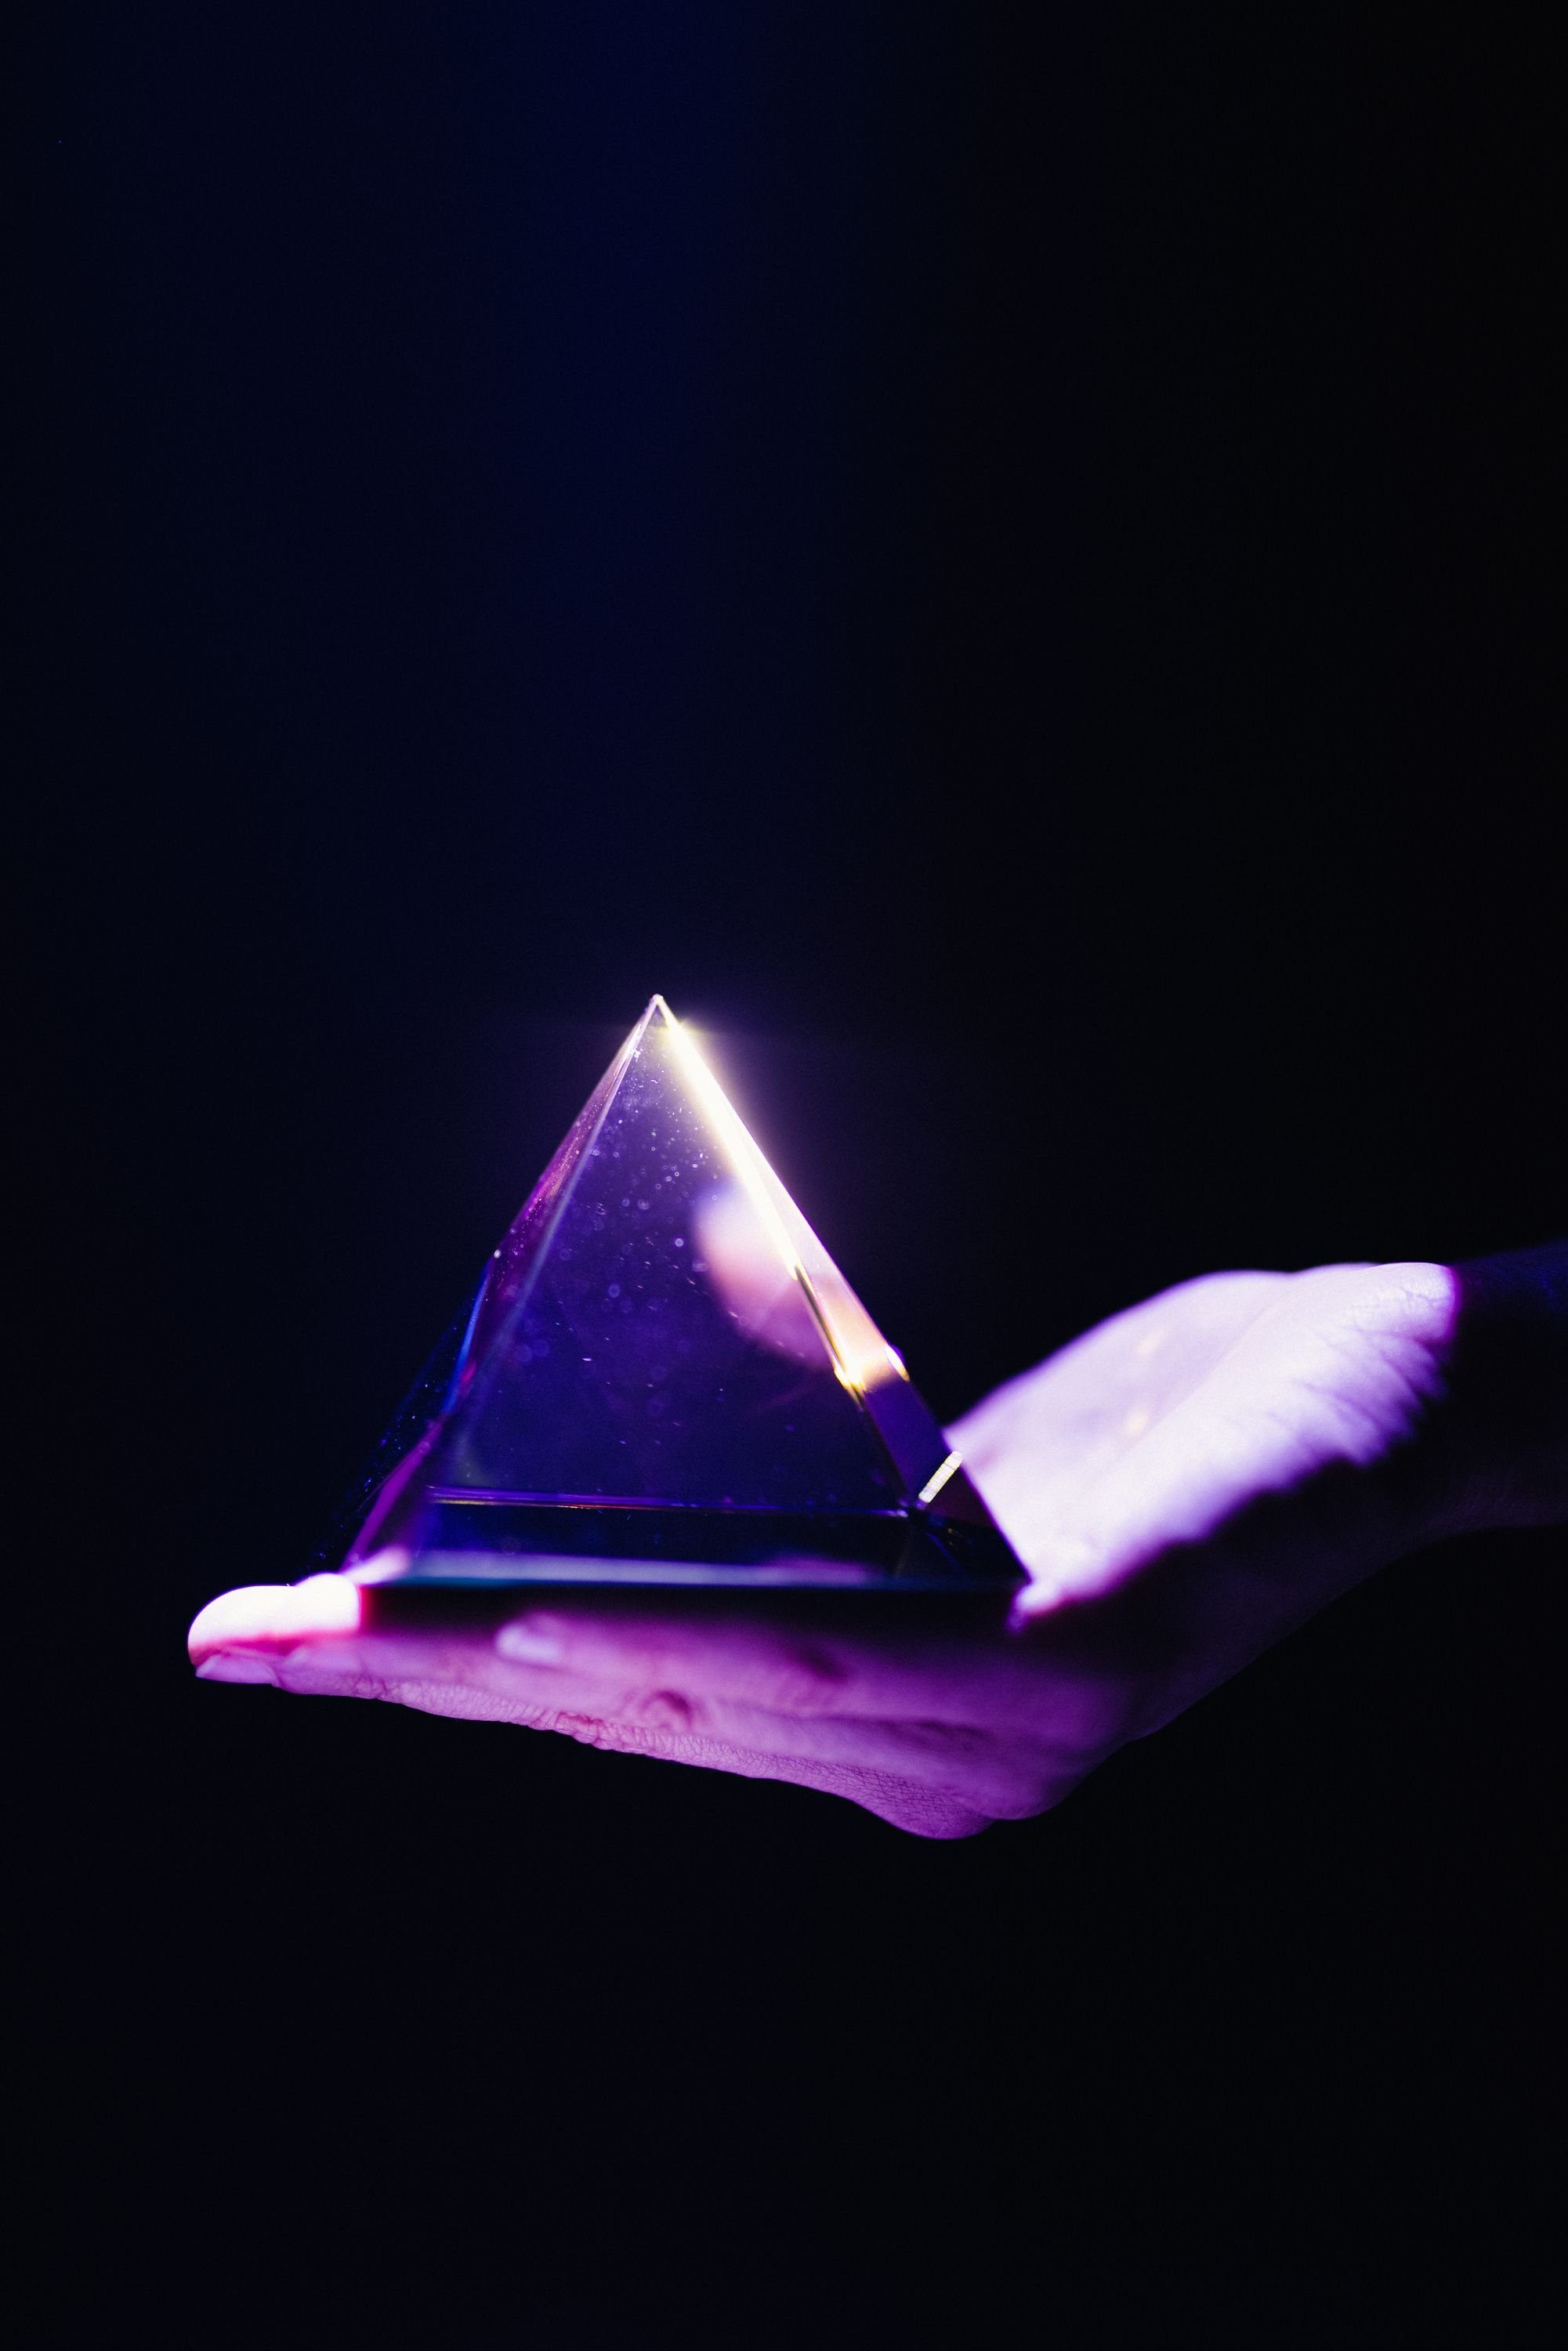 Induktionsbeleuchtung Basis mit Pyramide Dekoobjekt (in Regenbogenfarben (in Schwarz, irisierend FLYTE und Py, Py, Kristall-Glas Pyramide Pyramide schillernd) Basis Glas-Pyramide, Die schwebende Schwarz, schillernd) Regenbogenfarben Irisierend